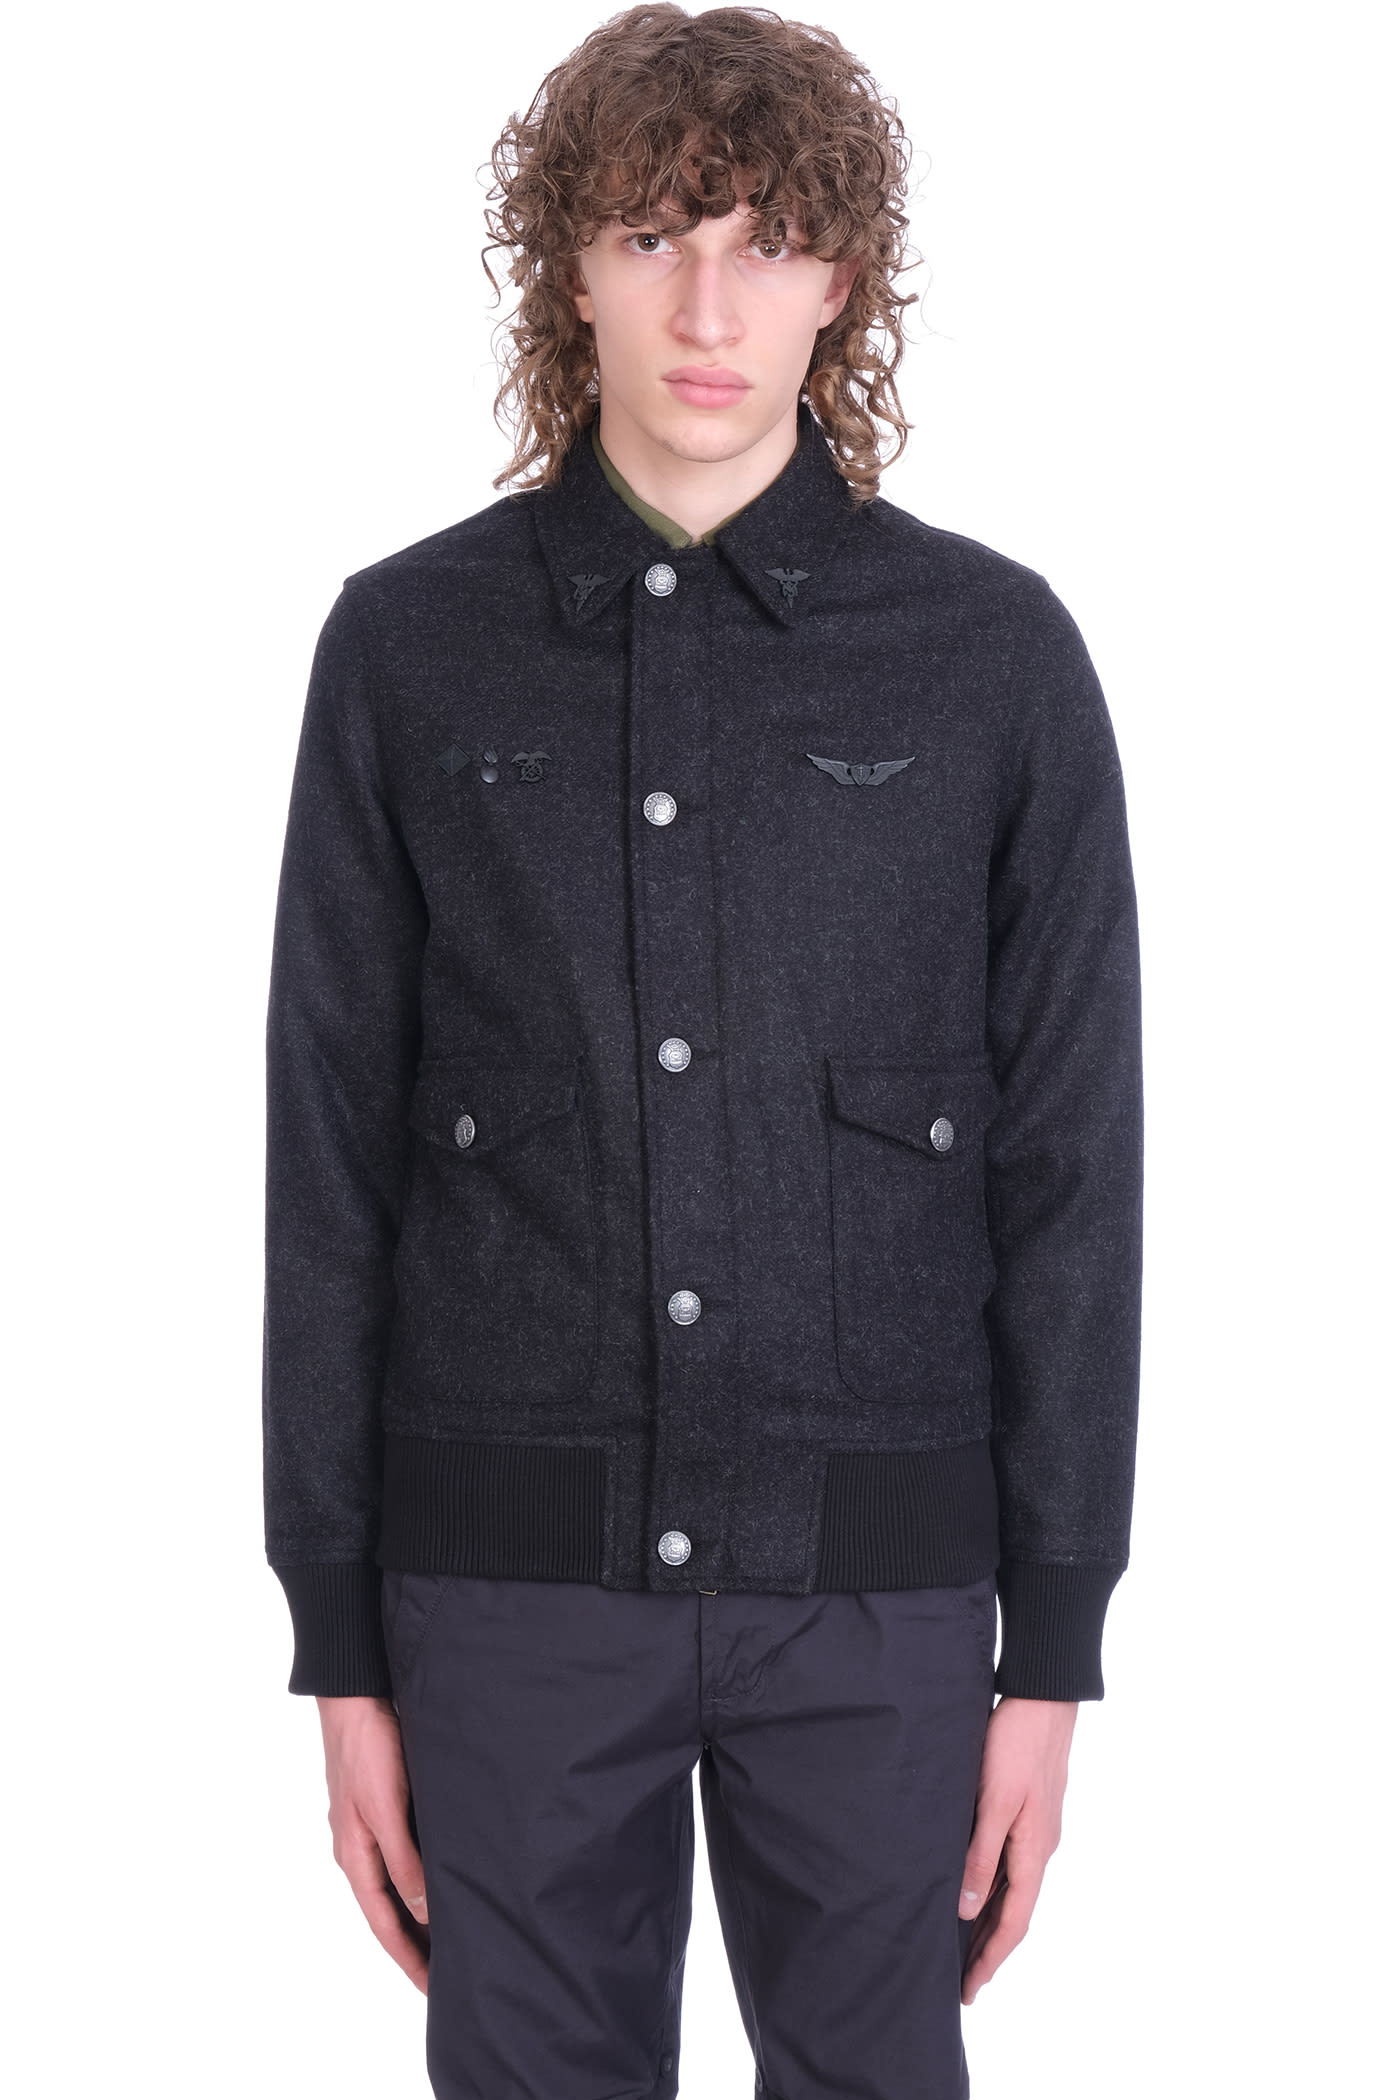 Maharishi Casual Jacket In Black Wool